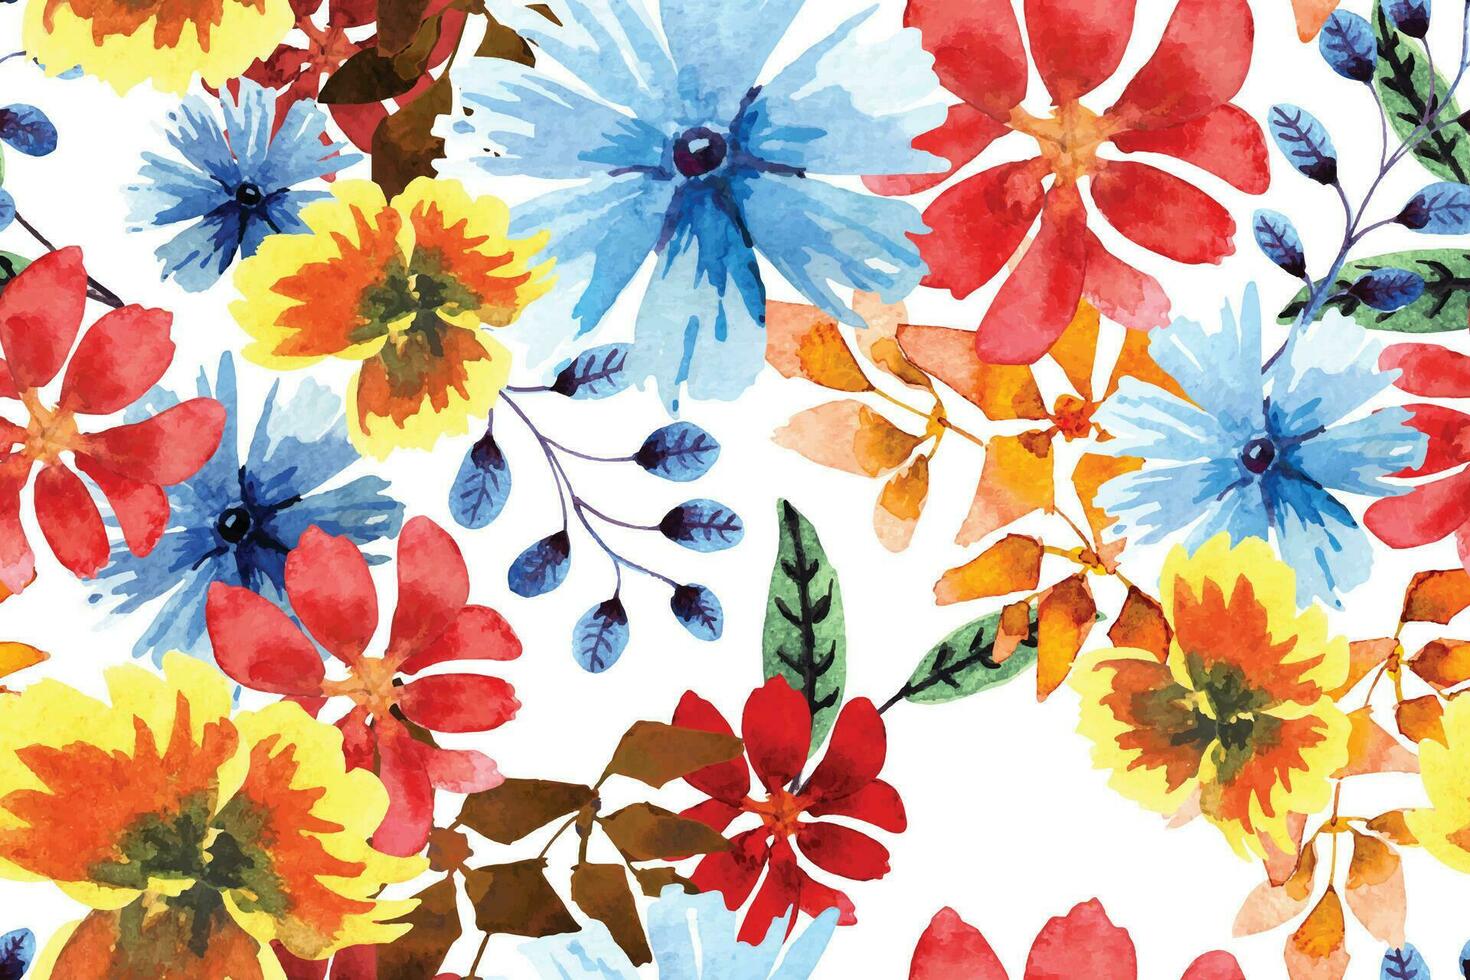 modello senza cuciture di fiori colorati disegnati con acquerello.per il design della carta da parati o del tessuto, stile vintage.pittura floreale in fiore per l'estate.sfondo botanico. vettore